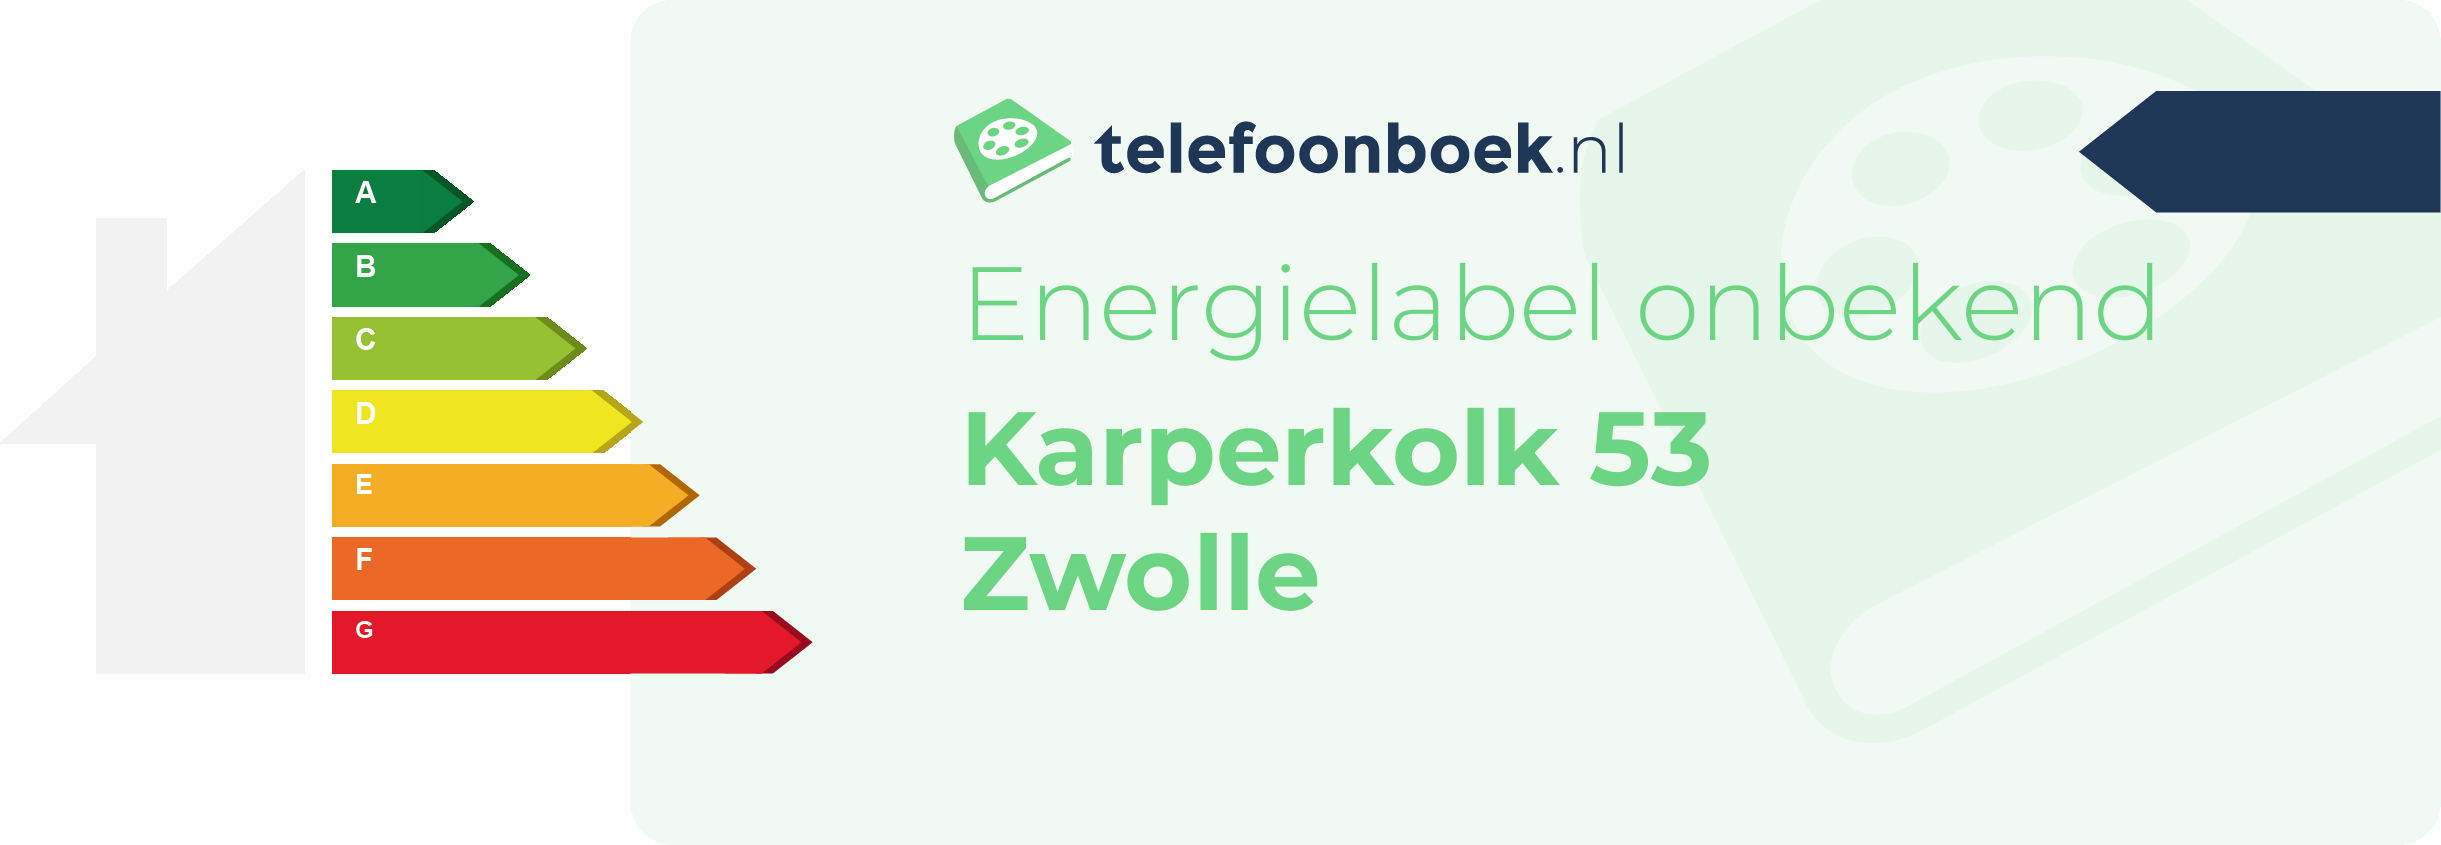 Energielabel Karperkolk 53 Zwolle